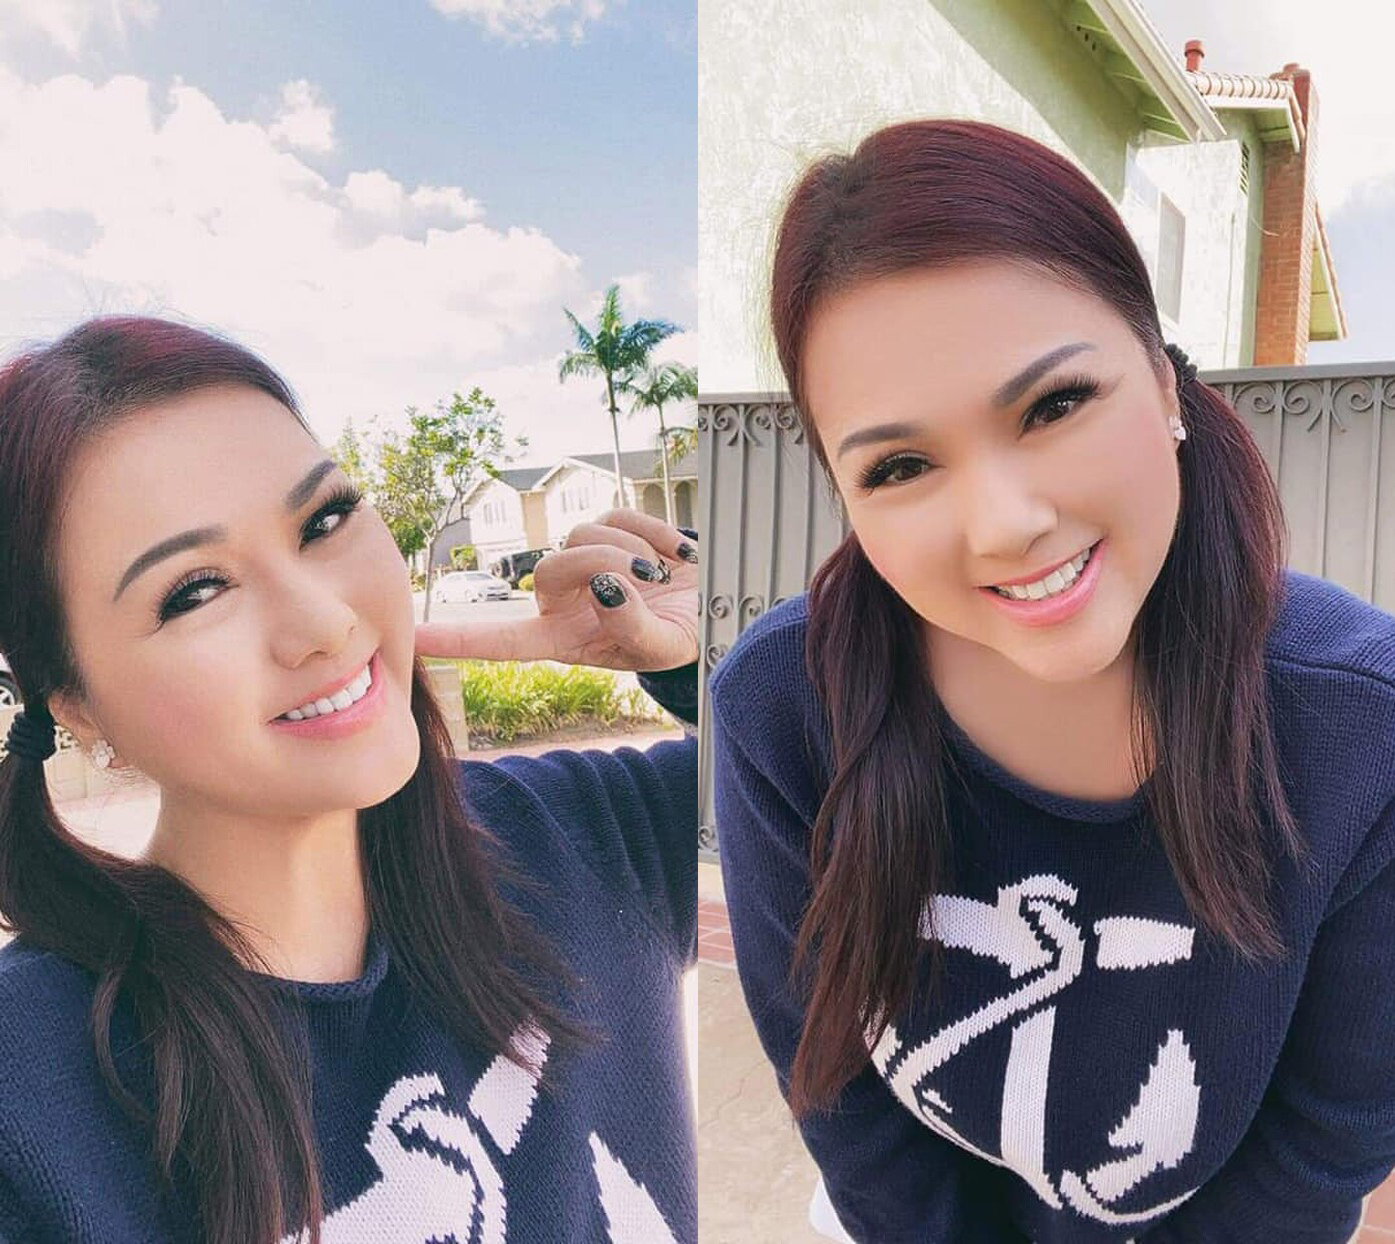 Gương mặt trang điểm nhẹ nhàng, ca sĩ Phương Loan làm điệu với kiểu buộc tóc hai bên vô cùng dễ thương, cô nở nụ cười tươi đầy lạc quan trong những bức hình selfie.